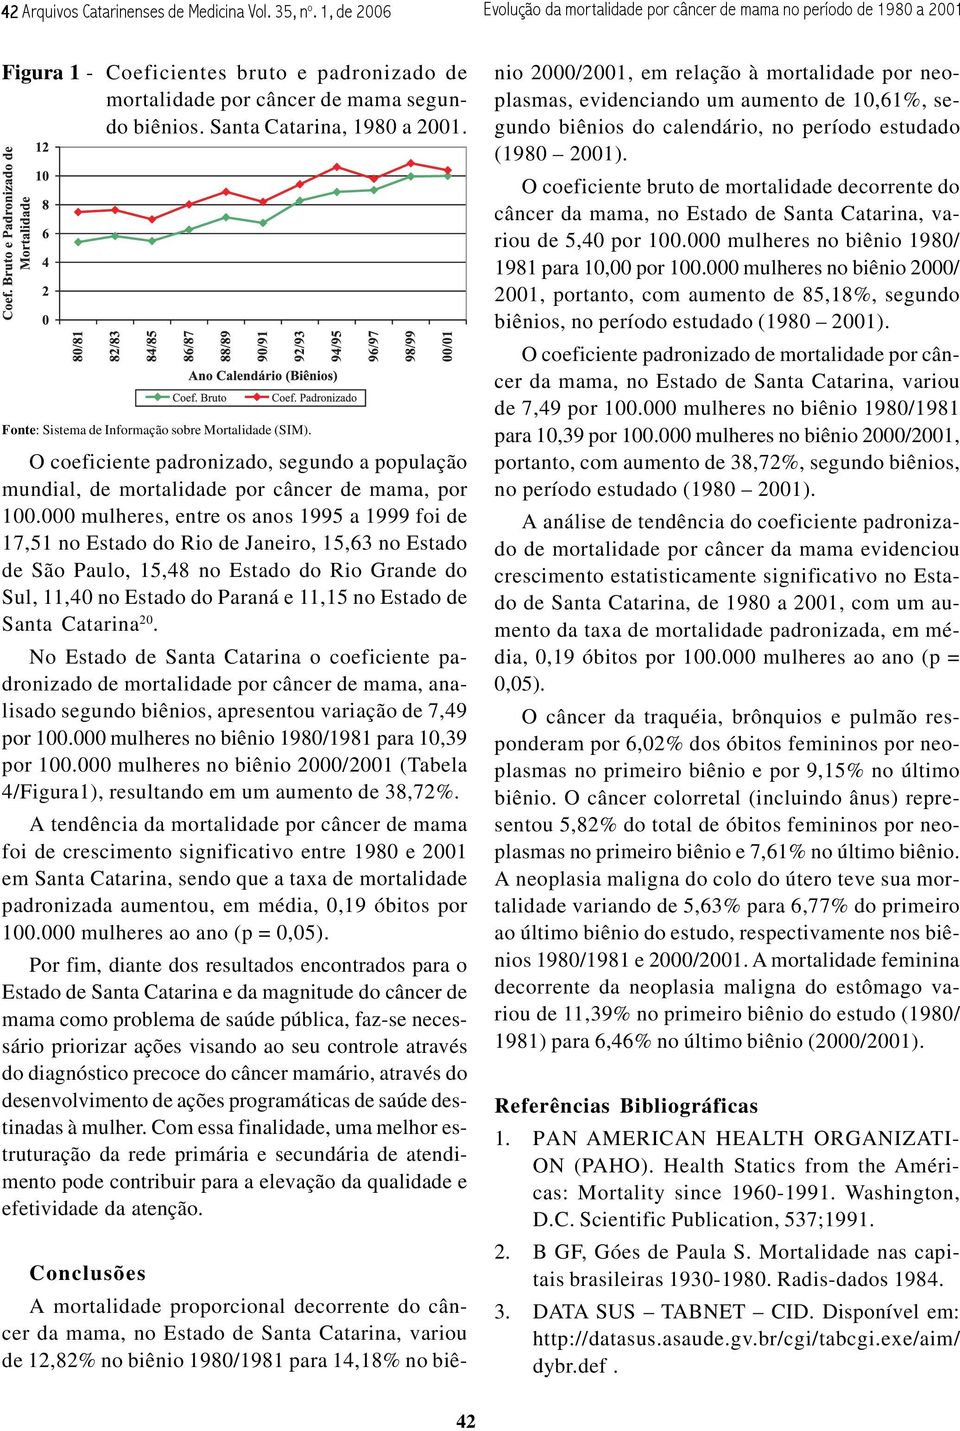 Santa Catarina, 1980 a 2001. Fonte: Sistema de Informação sobre Mortalidade (SIM). O coeficiente padronizado, segundo a população mundial, de mortalidade por câncer de mama, por 100.